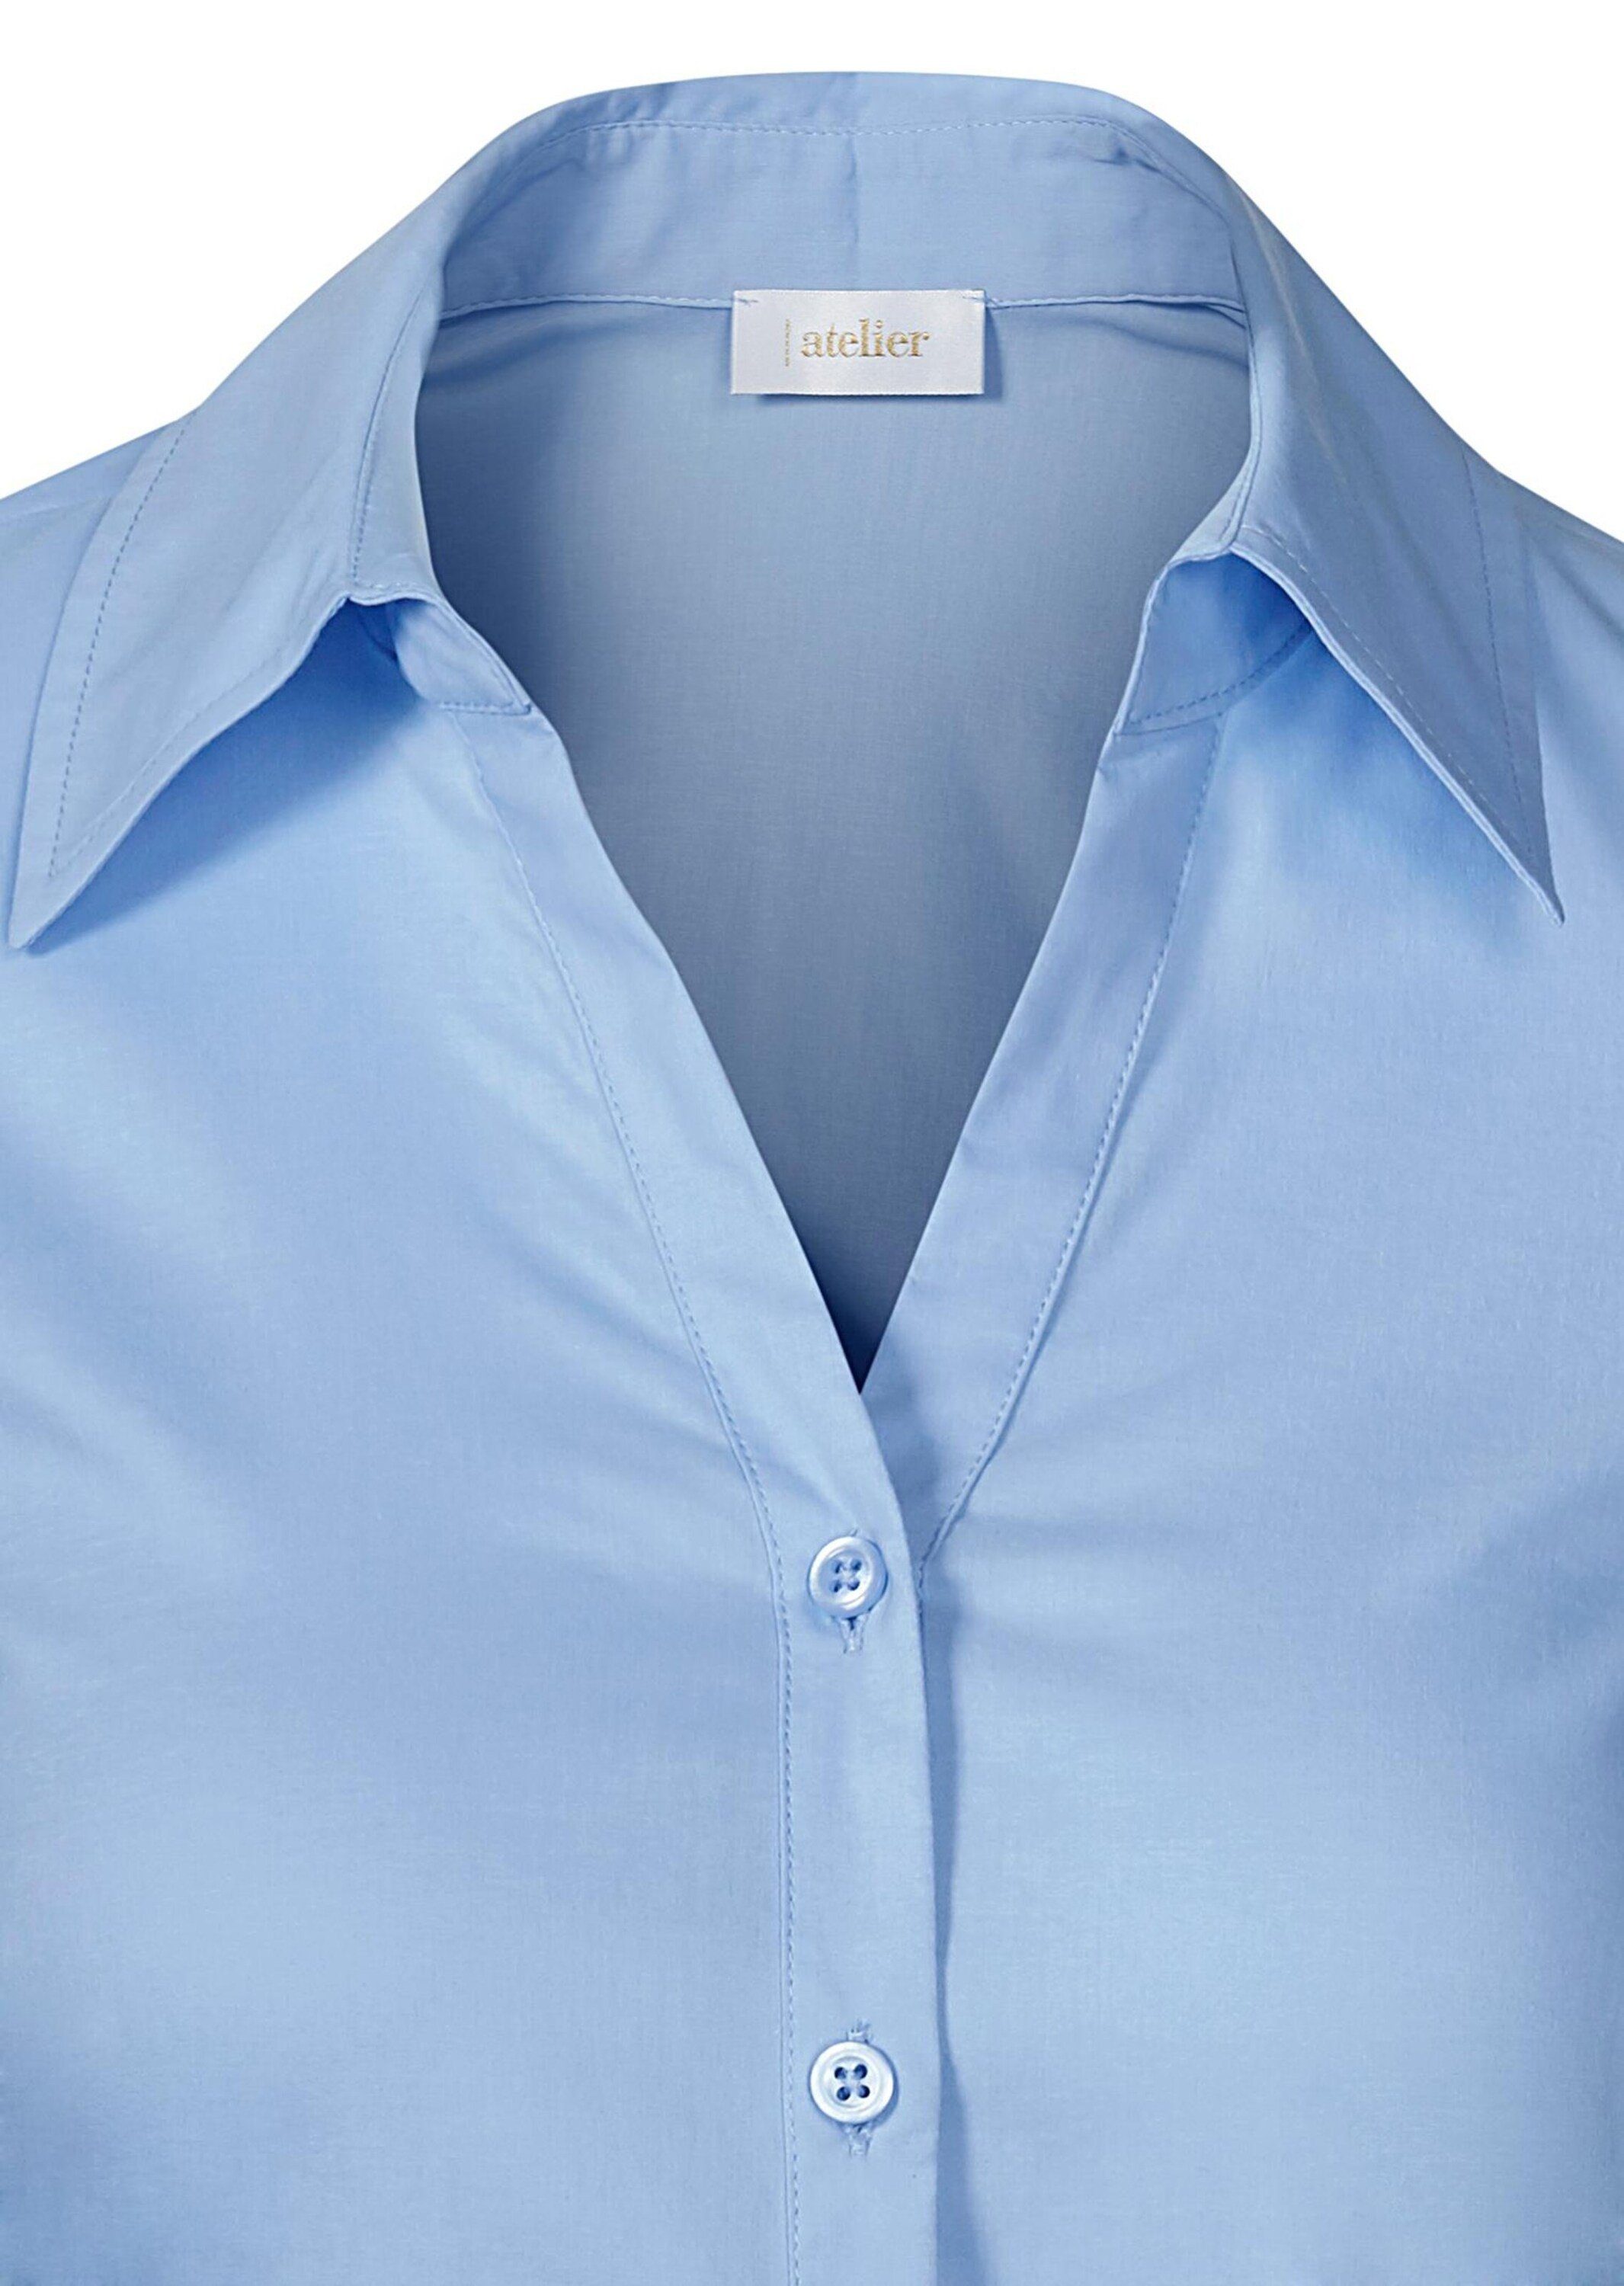 Hemdbluse Bluse GOLDNER Stretchbequeme Baumwolle Kurzgröße: mit bleu